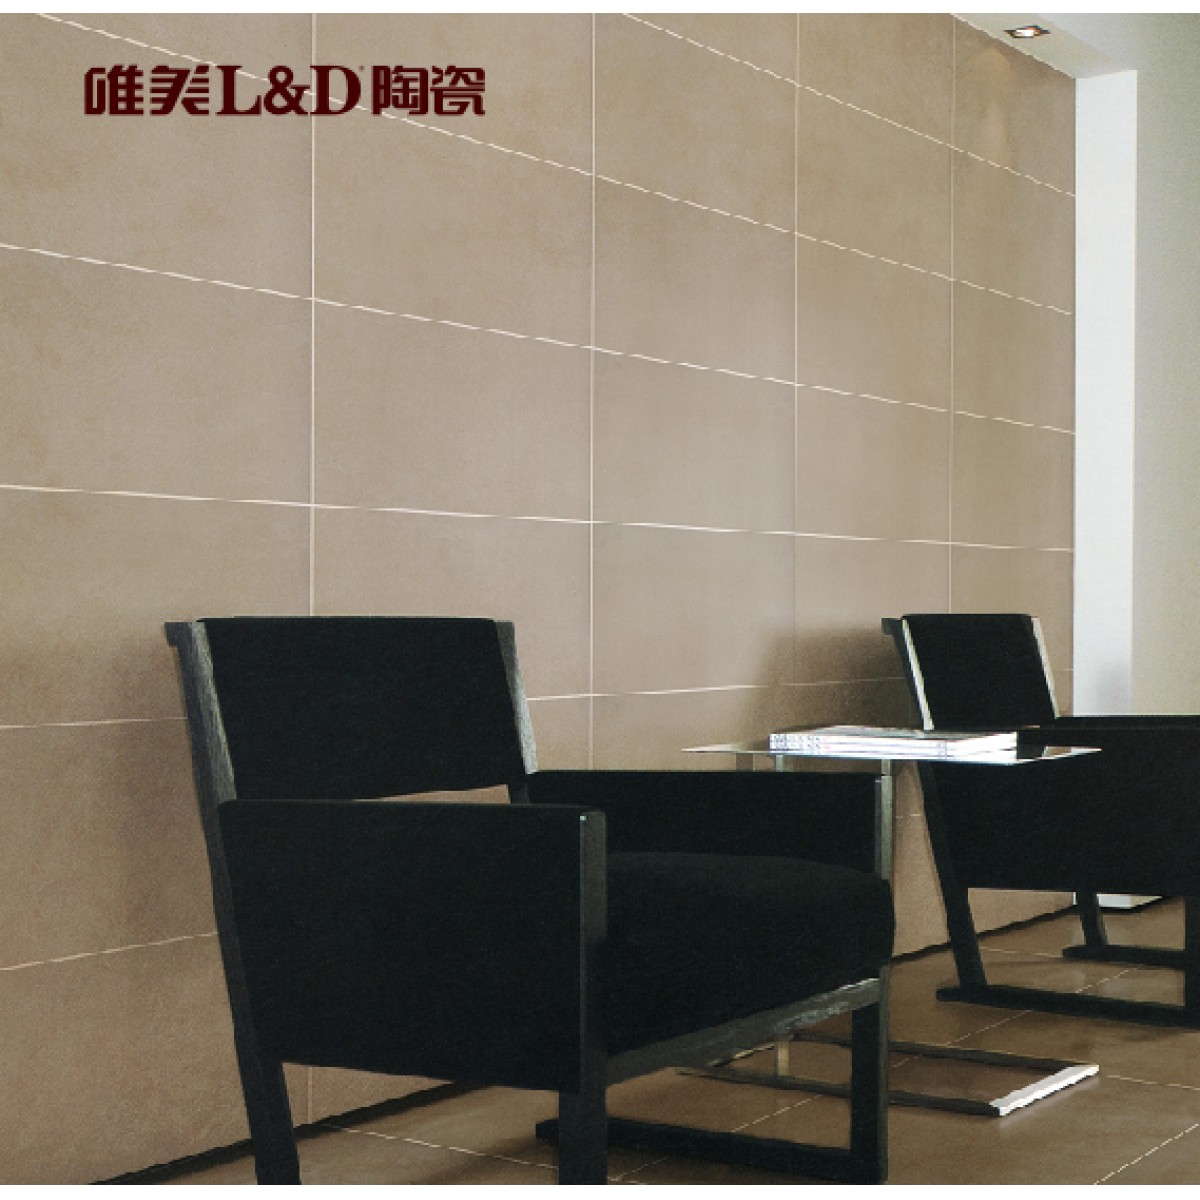 惠州唯美L&D陶瓷莫钛石系列LSI6019(600*600)